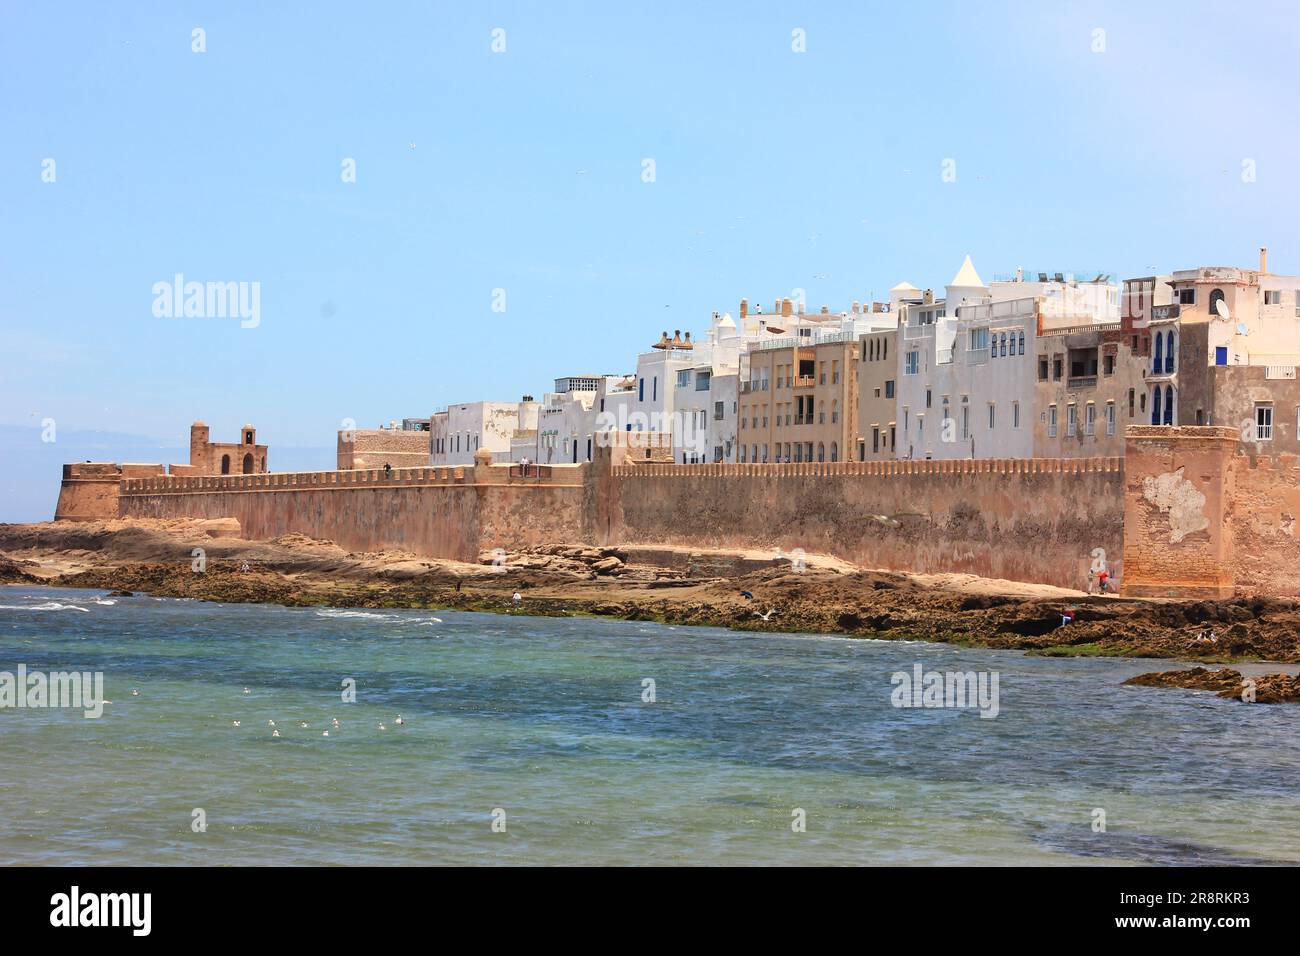 Vue aérienne sur la vieille ville d'Essaouira au Maroc Banque D'Images